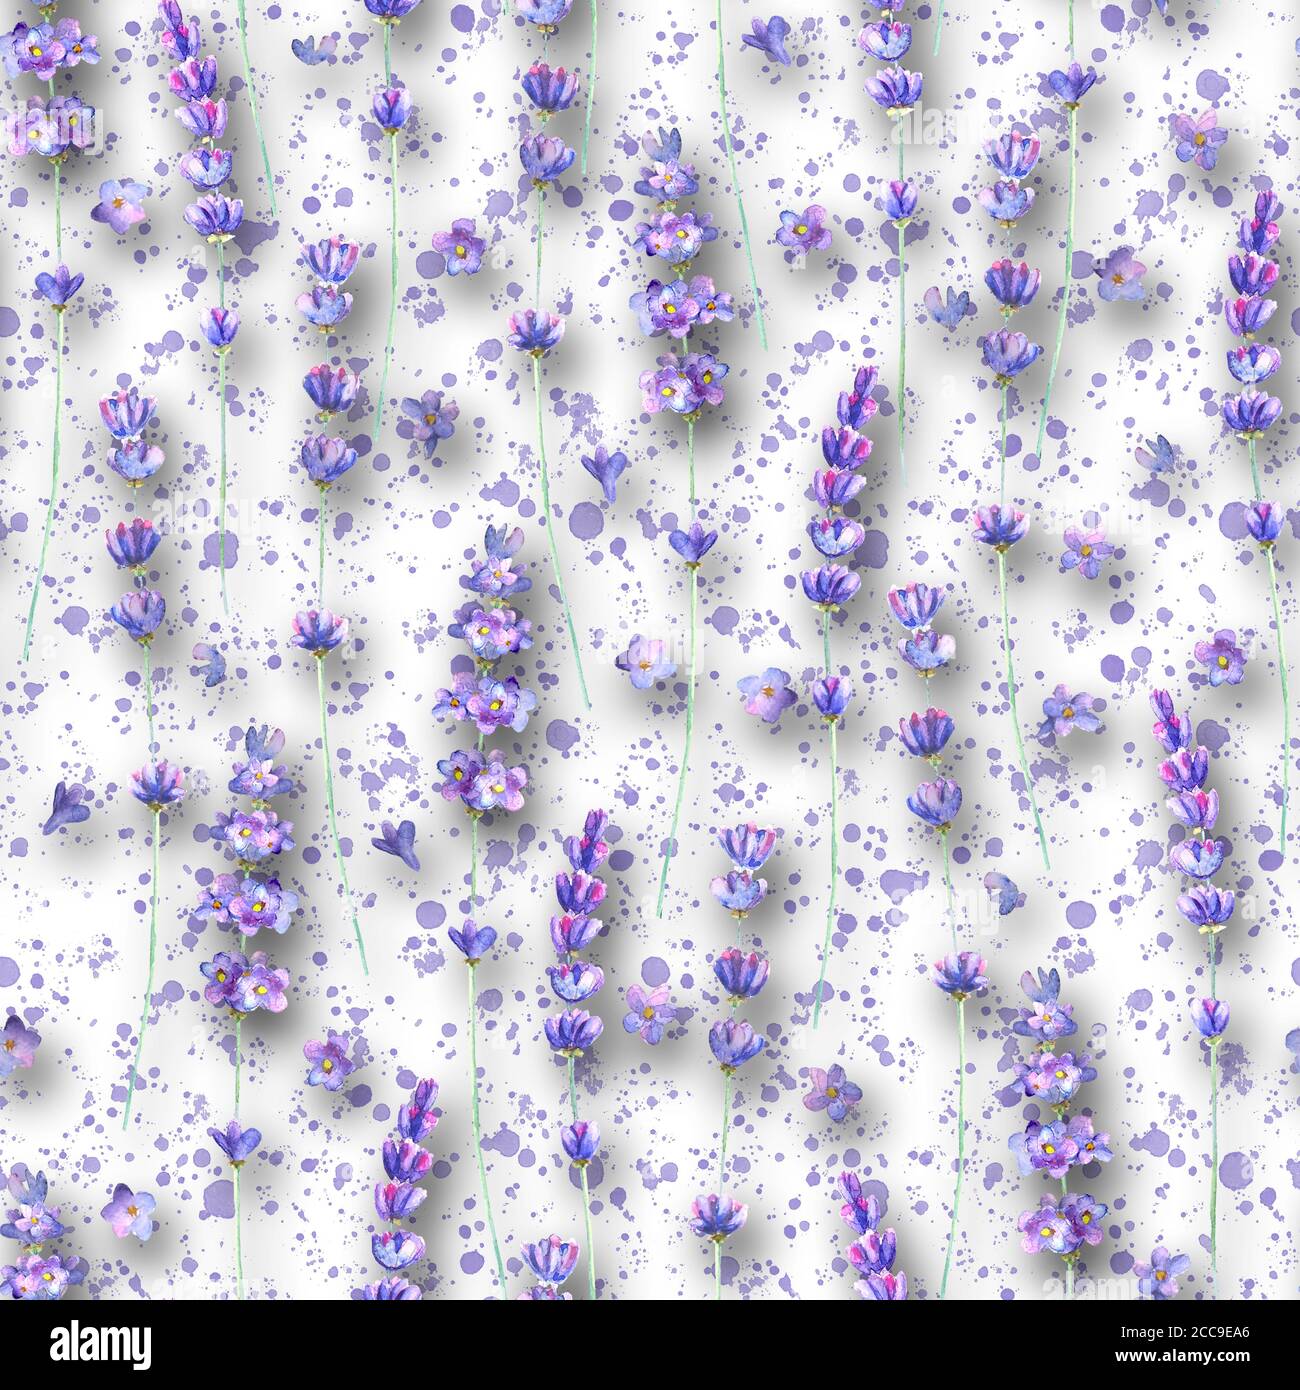 Lavendel Blumen und lila Spritzer Aquarell nahtlose Muster auf weißem Hintergrund. Aquarell handgezeichnete Illustration. Druck für Textil, Wandverhang Stockfoto